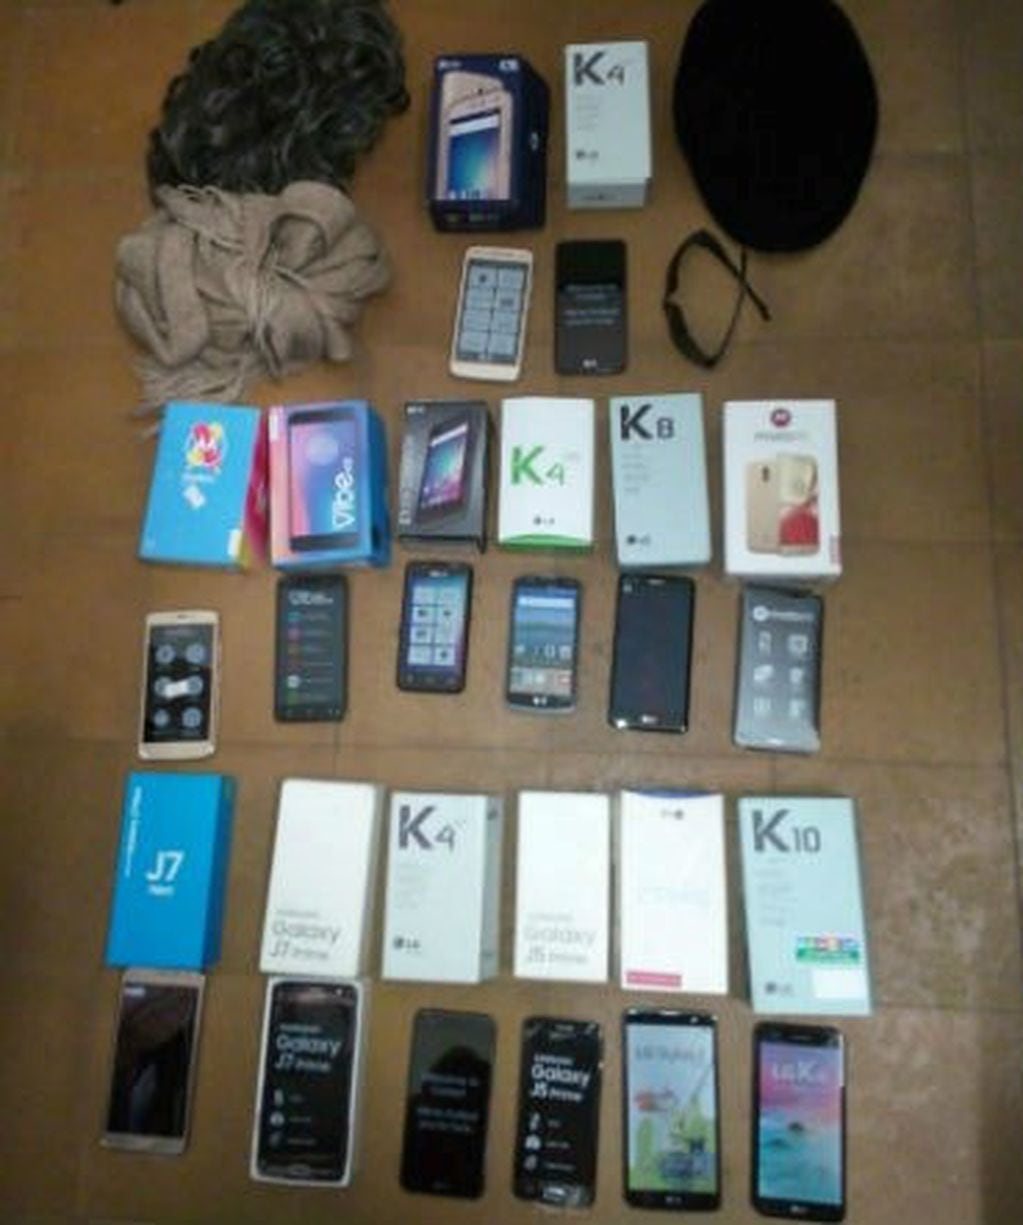 Se contabilizaron más de diez celulares robados.